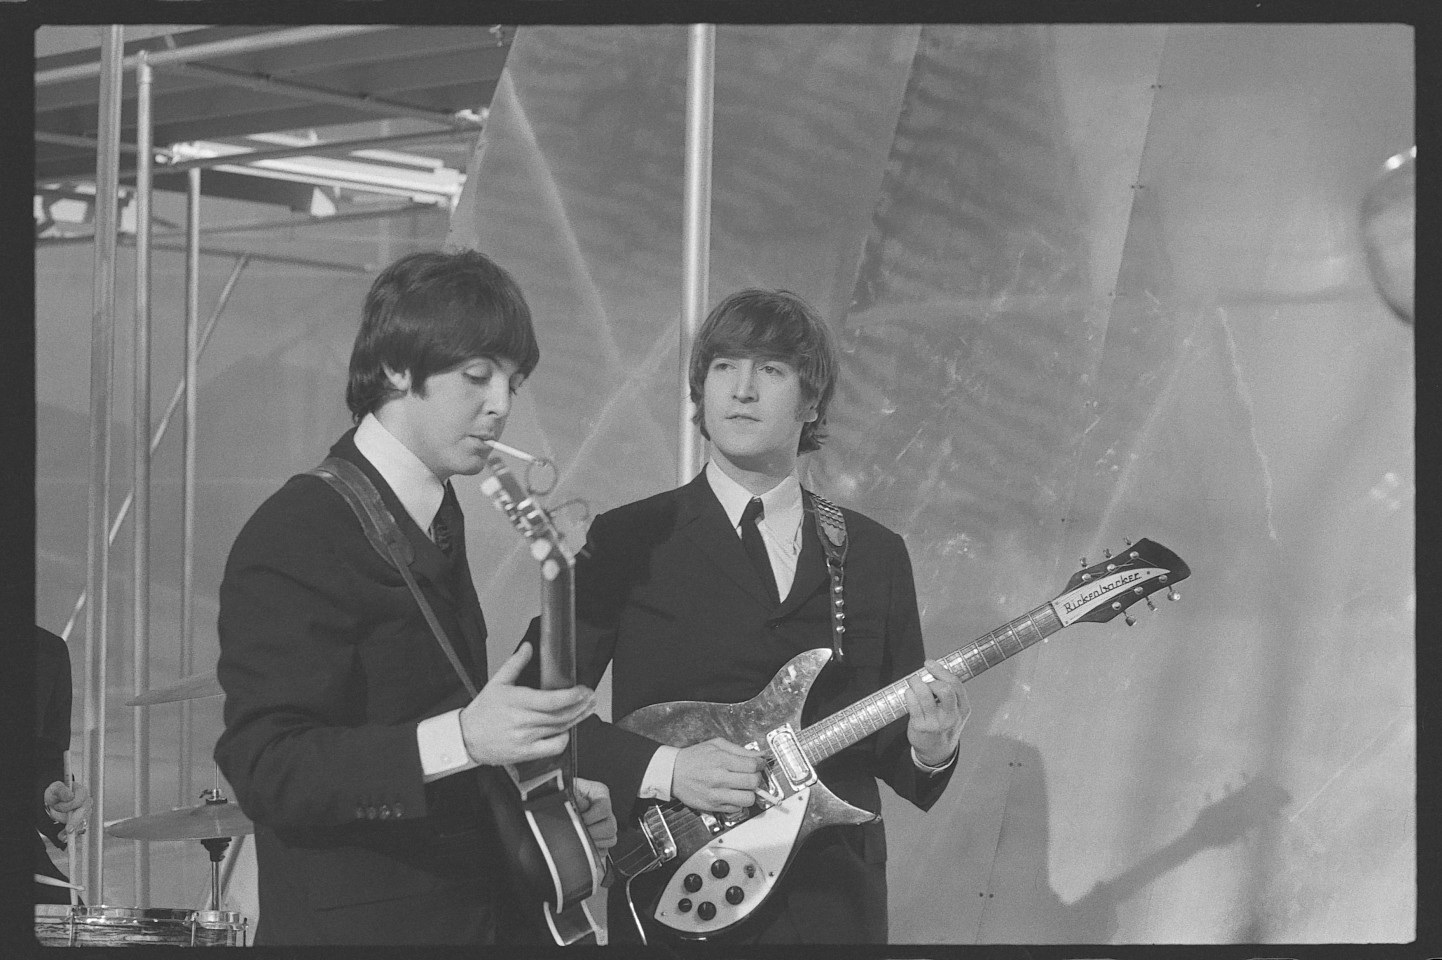  Beatles members Paul McCartney (left) and John Lennon